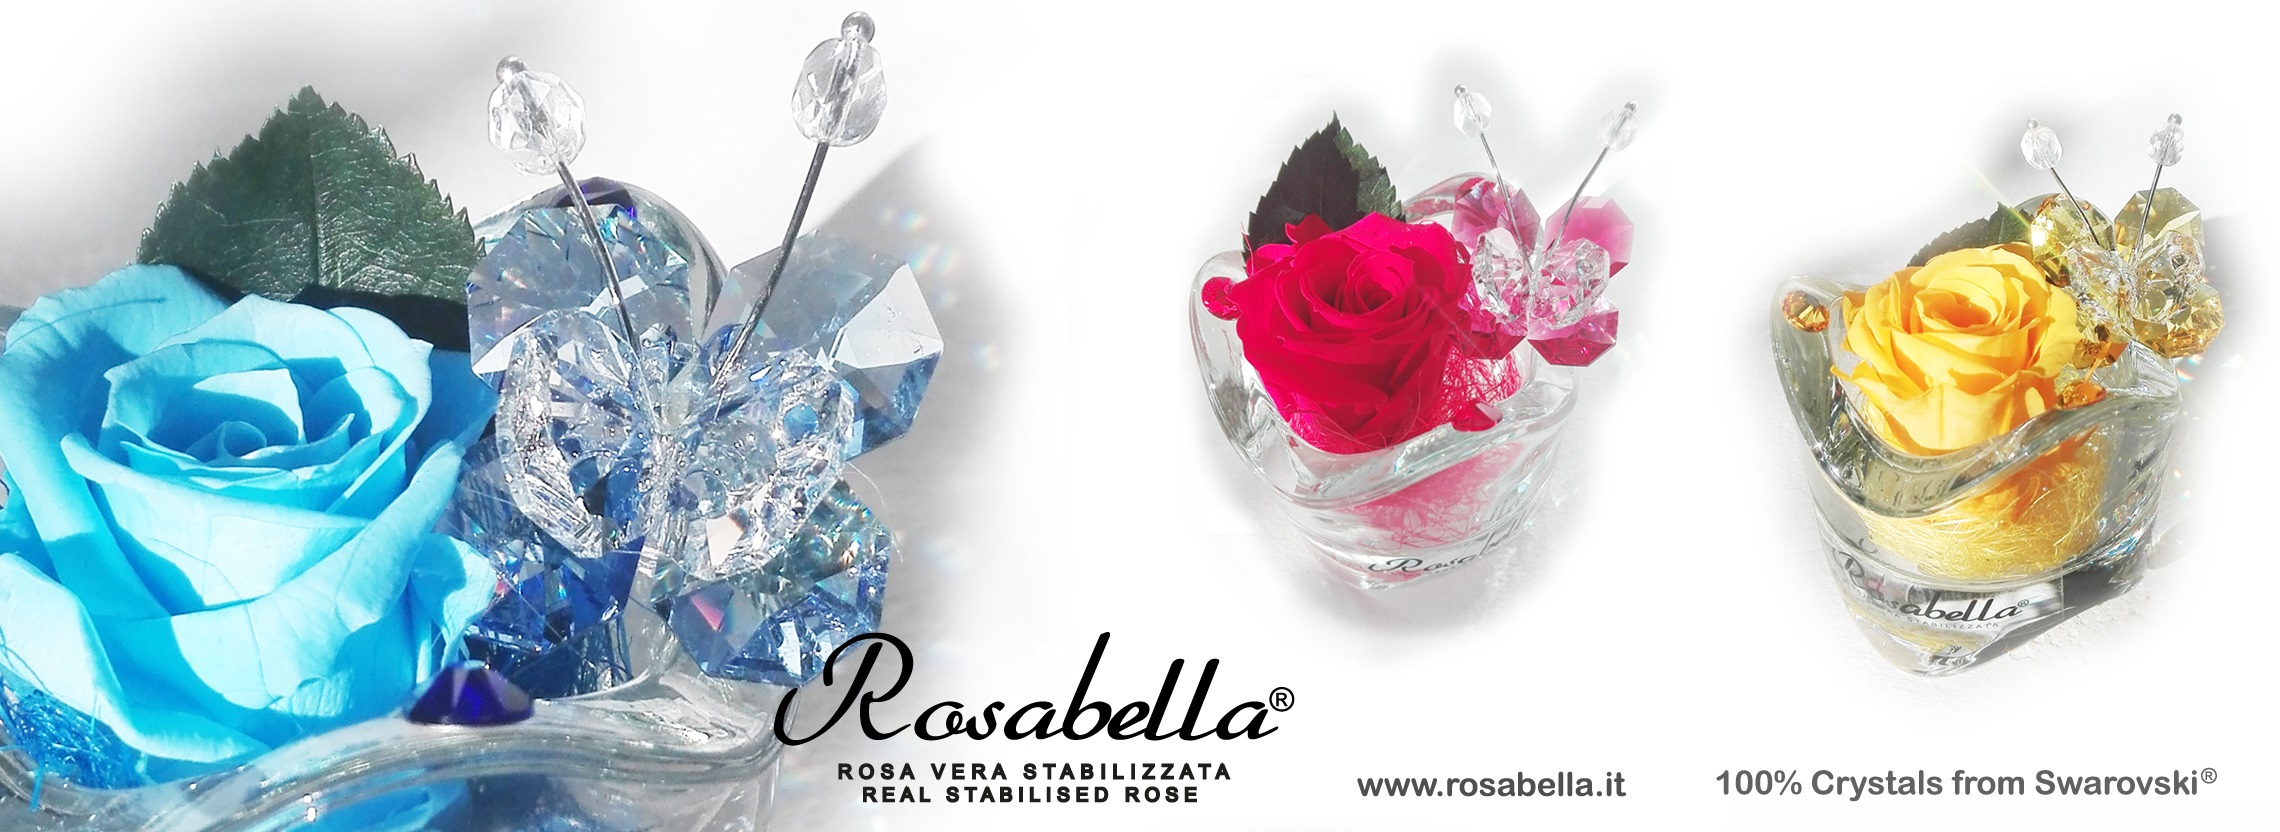 Novità 2015 - ROSABELLA® - l'originale Rosa Vera Stabilizzata, la tua Rosa  Gioello